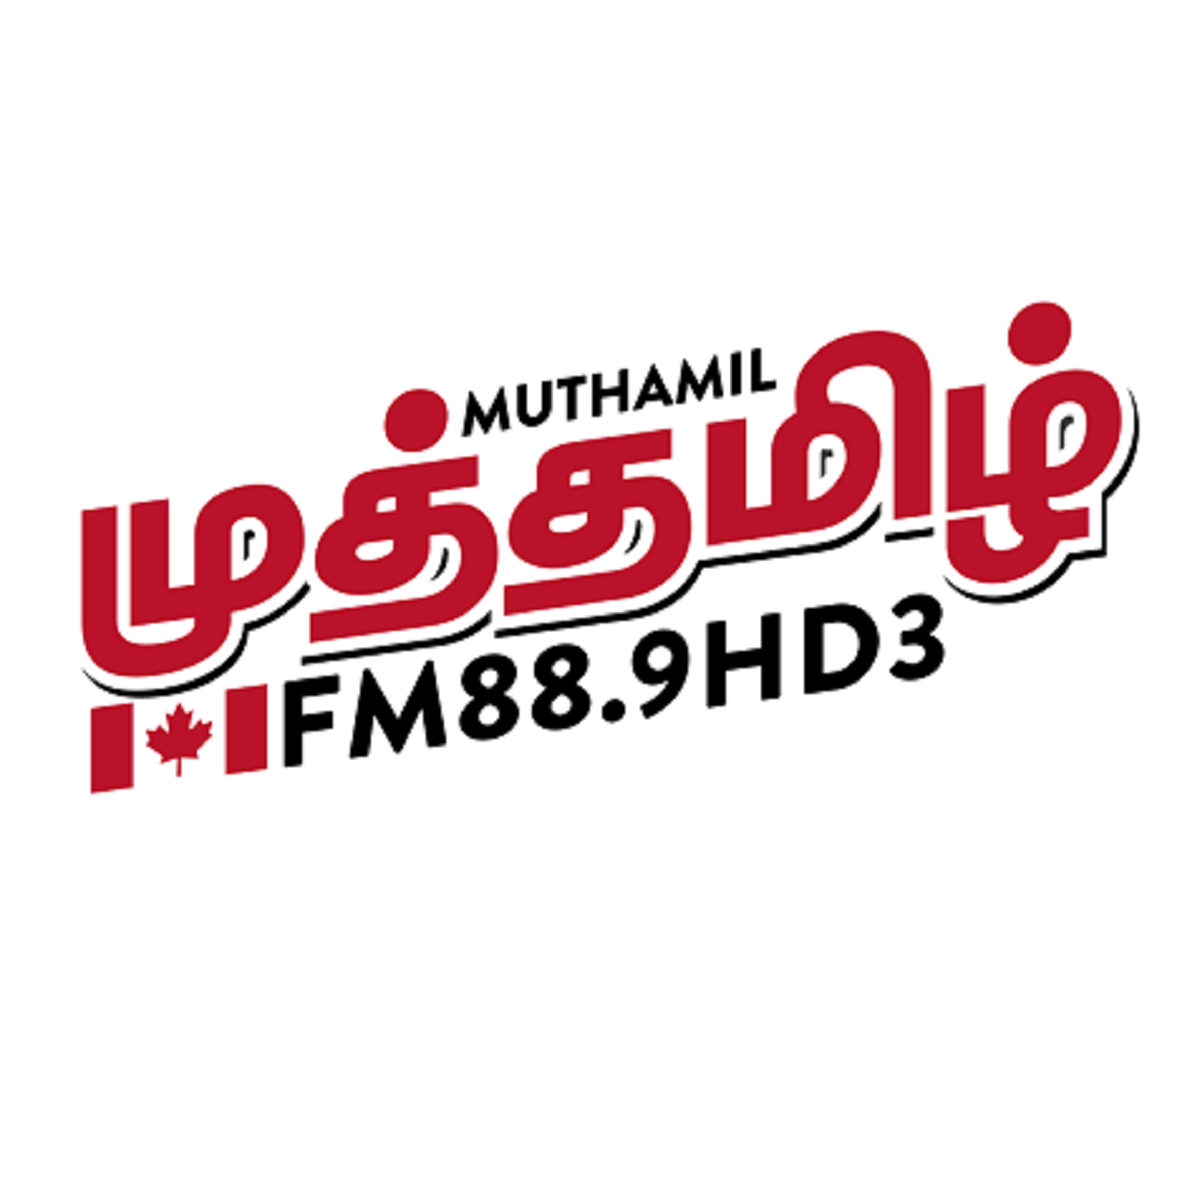 Muthamil FM88.9 HD3